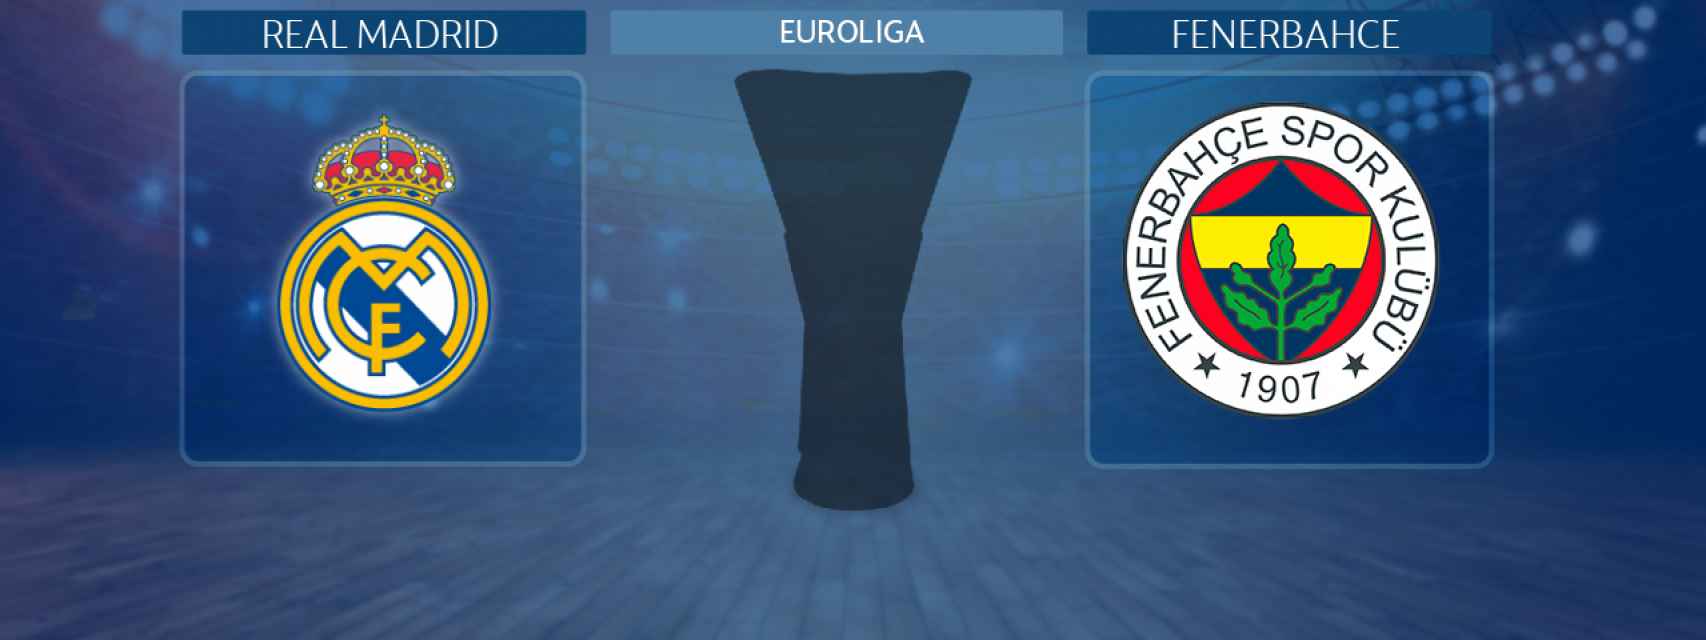 Real Madrid - Fenerbahce,  partido de la Euroliga